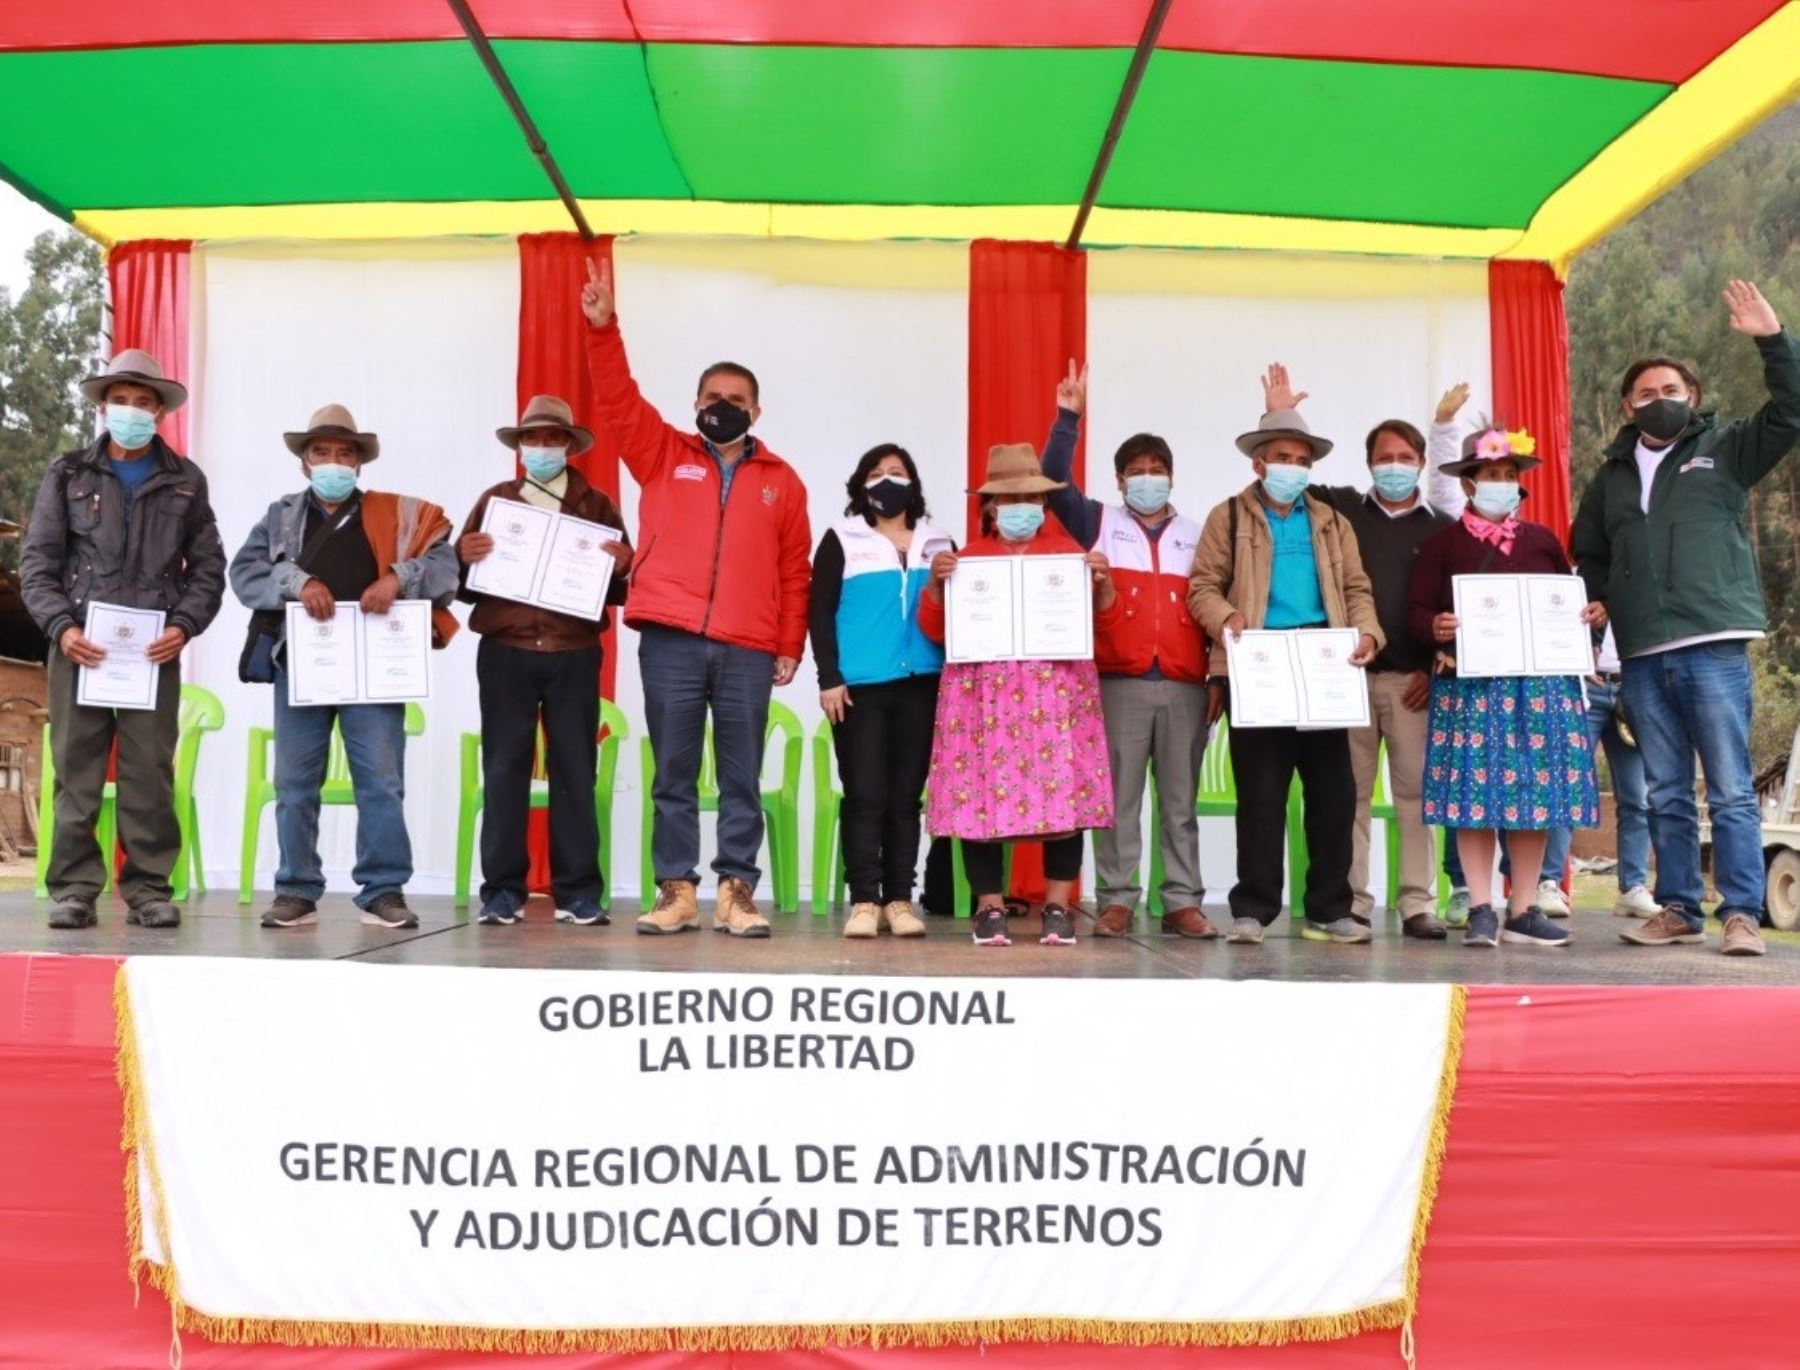 Día del Campesino: Gore La Libertad entrega 1,500 títulos de propiedad agrarios en Pataz